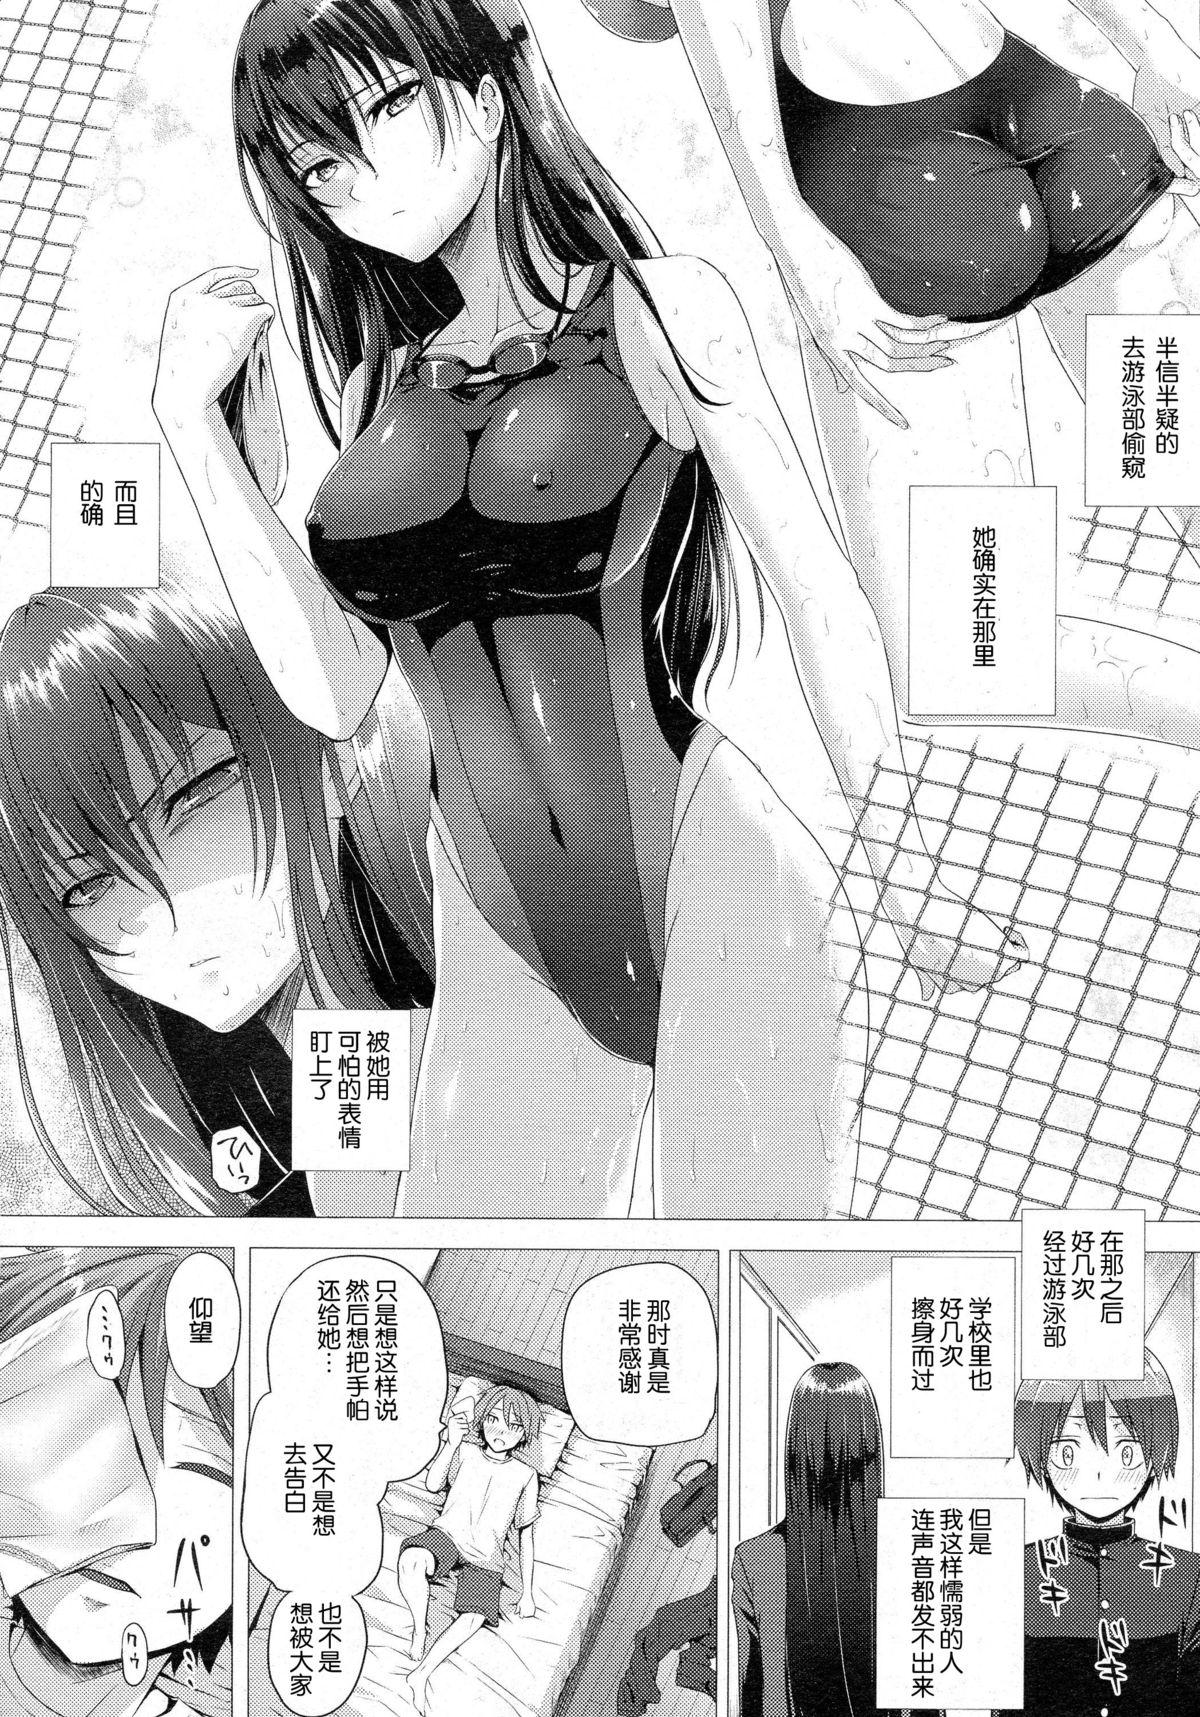 Roundass Yume no Naka demo Aimashou Amatuer Porn - Page 5